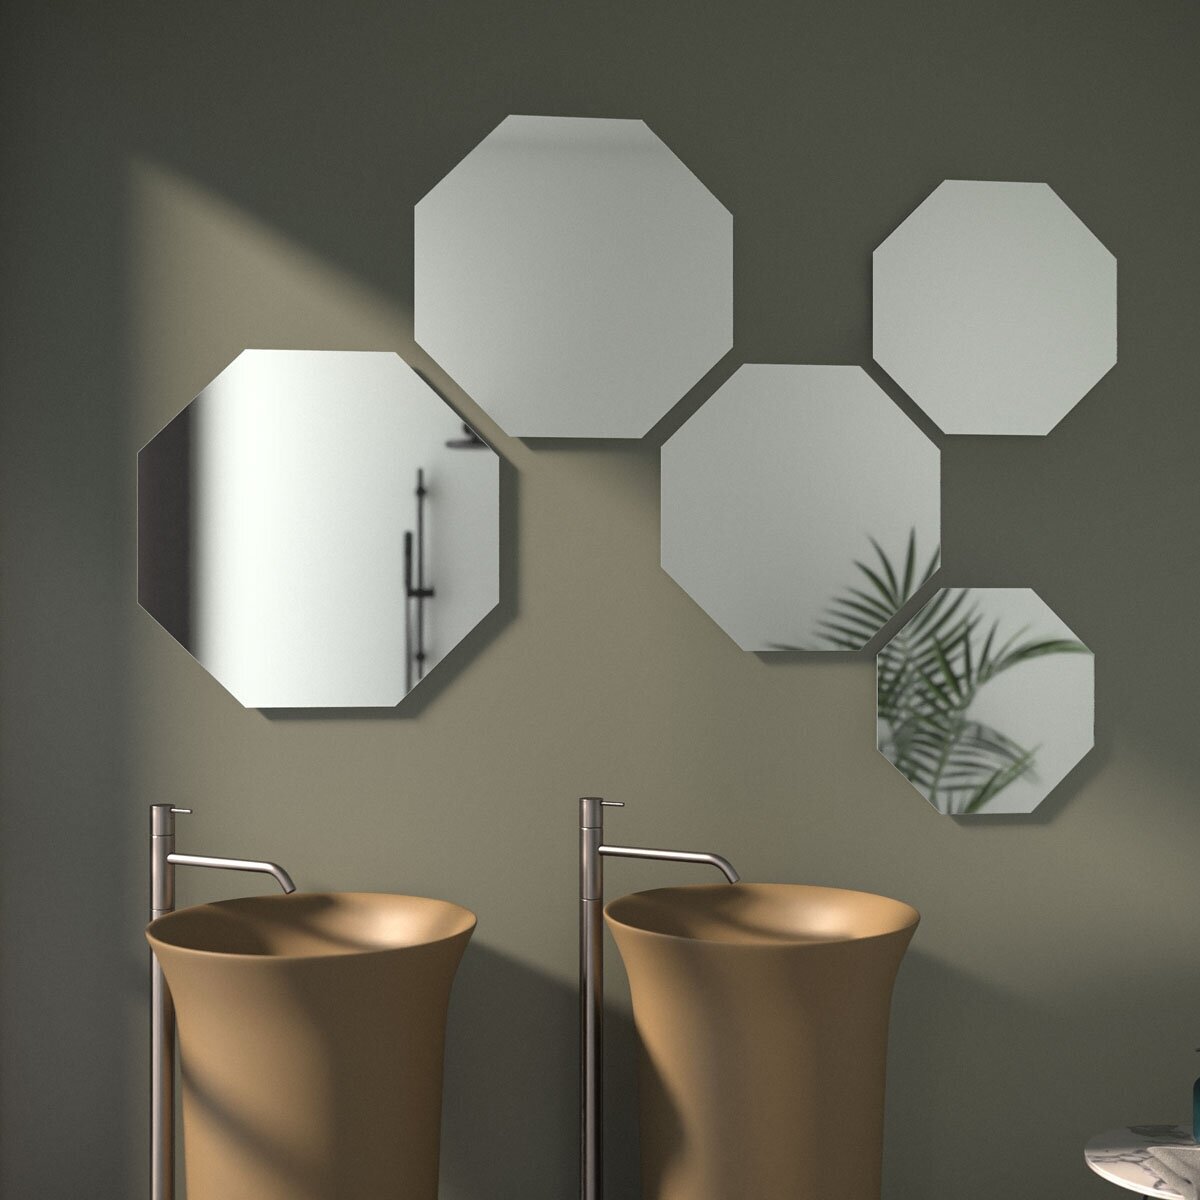 Зеркало настенное EDGE EVOFORM 50х50 см, для гостиной, прихожей, спальни, кабинета и ванной комнаты, SP 9926